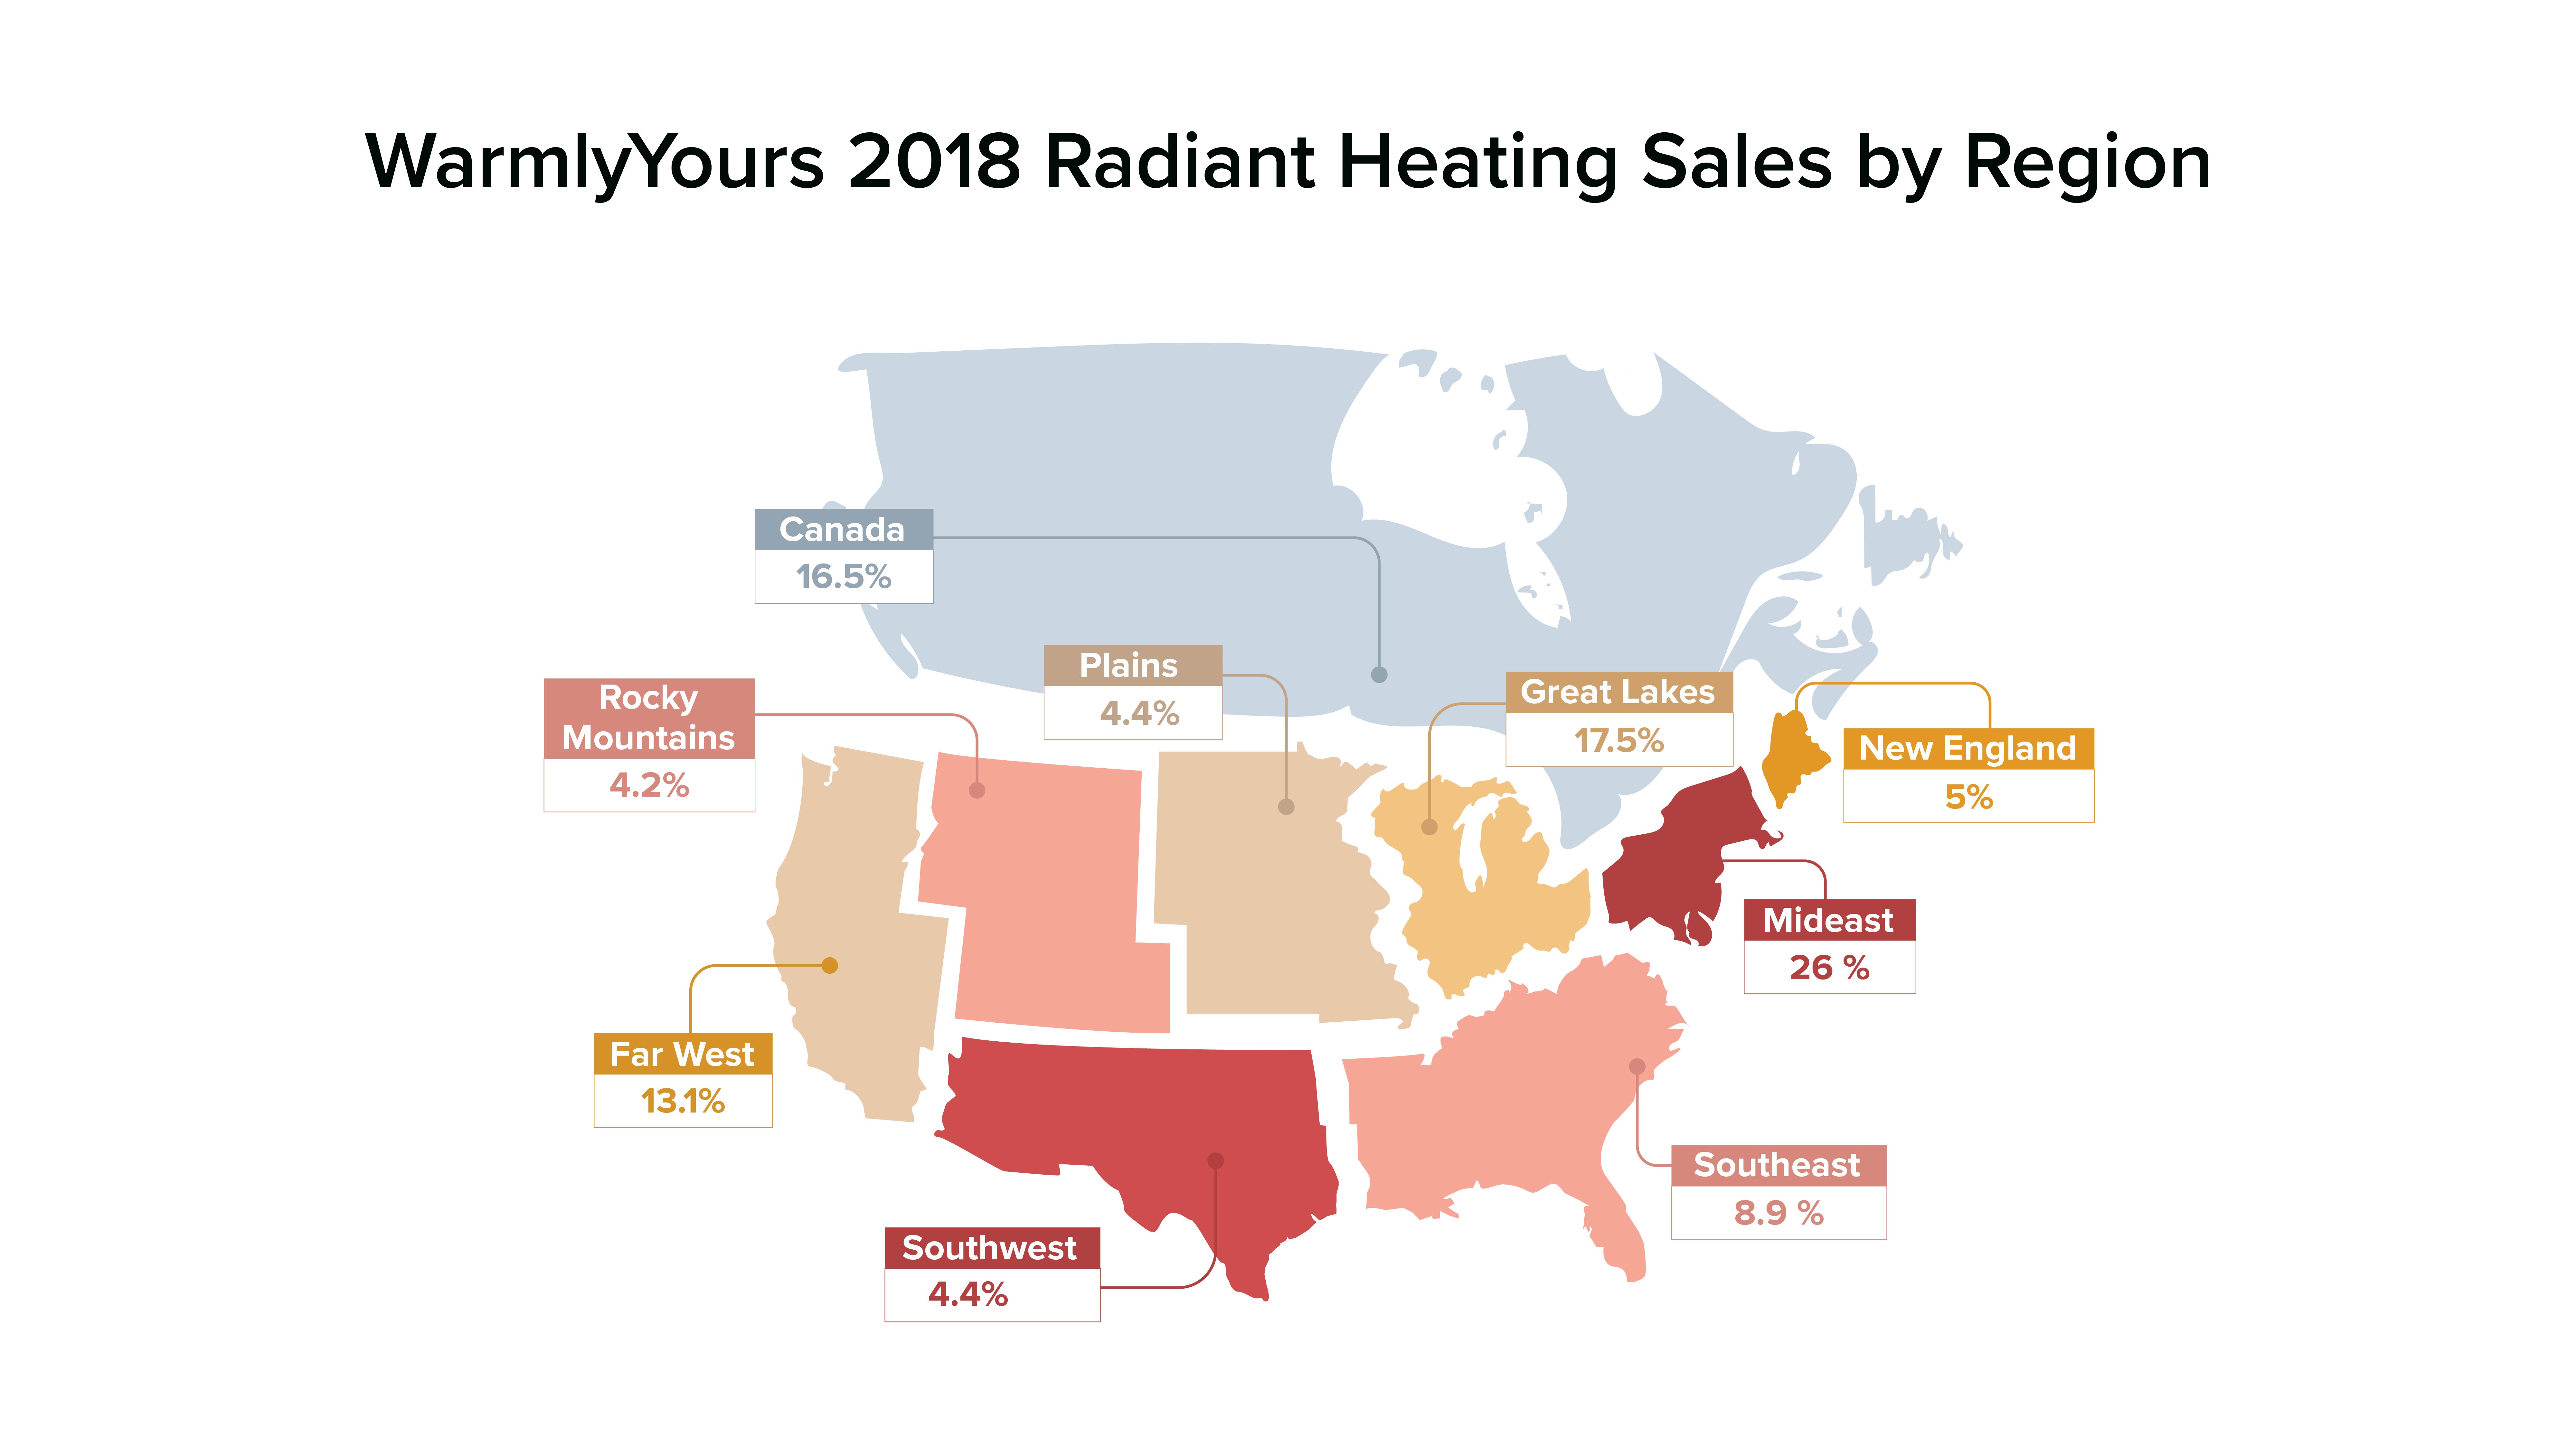 Q4 2018 WarmlyYours Radiant Heating Sales by Region